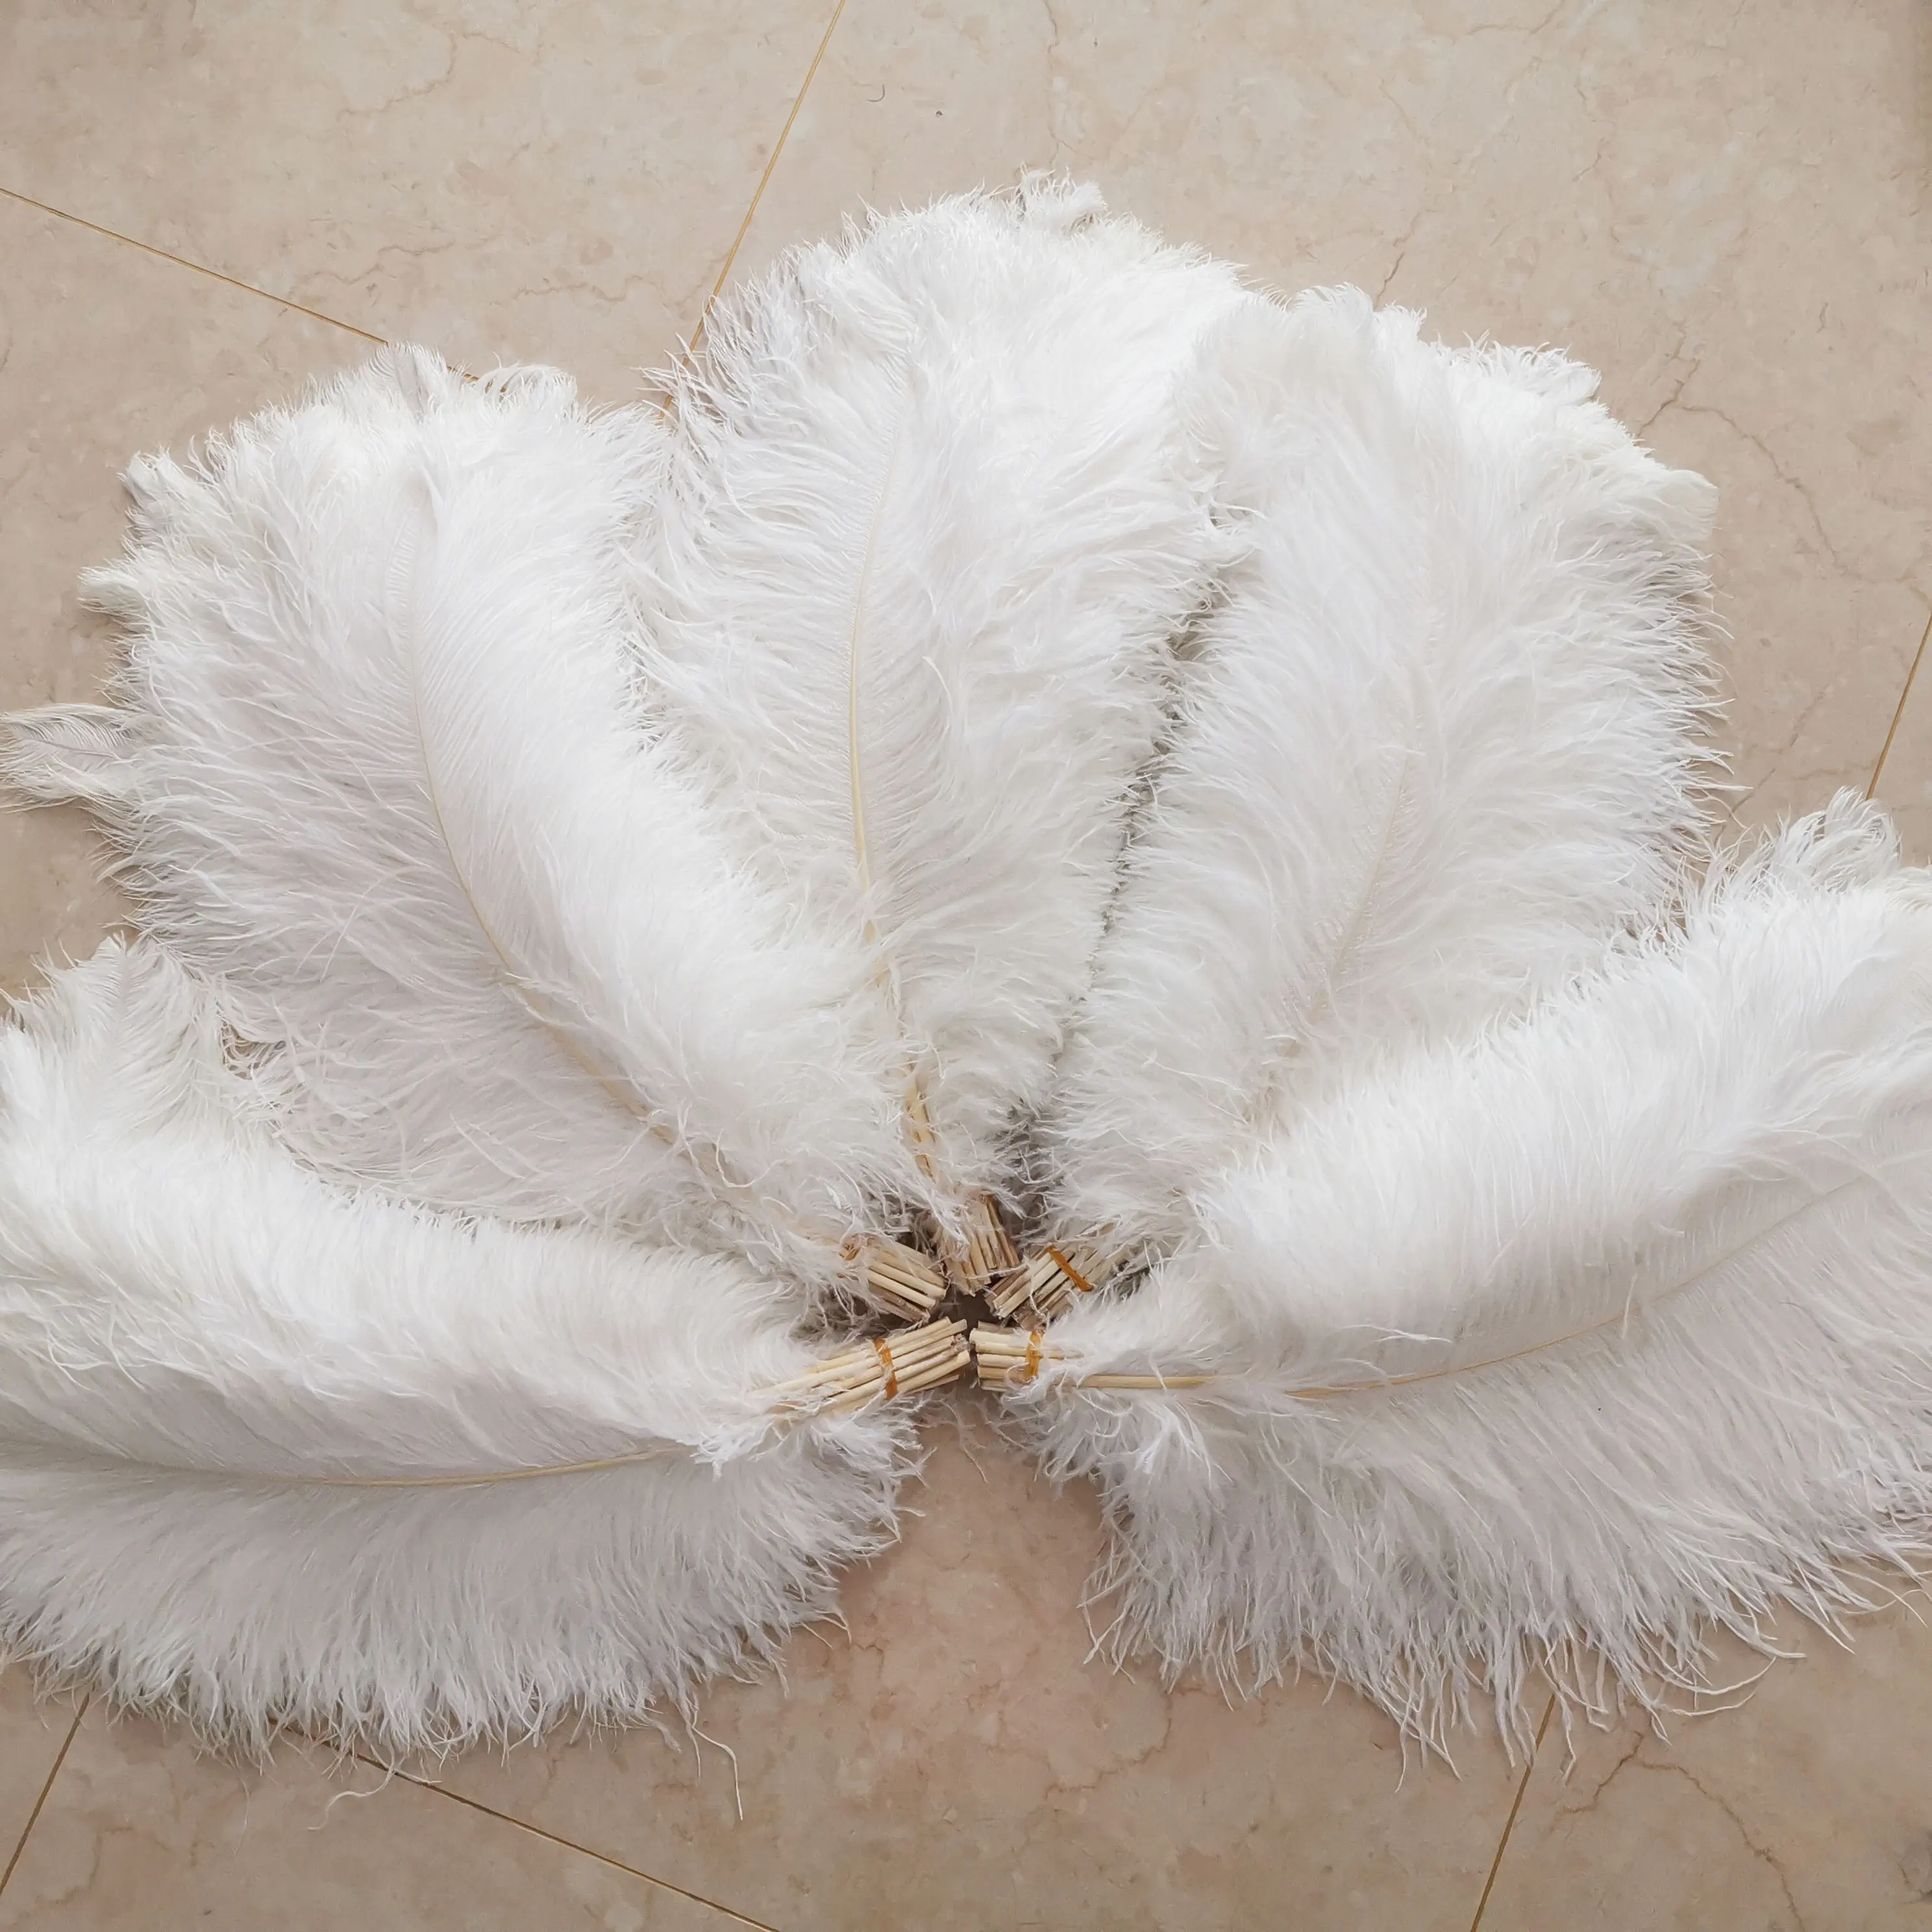 Putih Besar dan Berwarna-warni 70-75 Cm Massal Karnaval Bulu Burung Unta untuk dengan Harga Murah Dijual